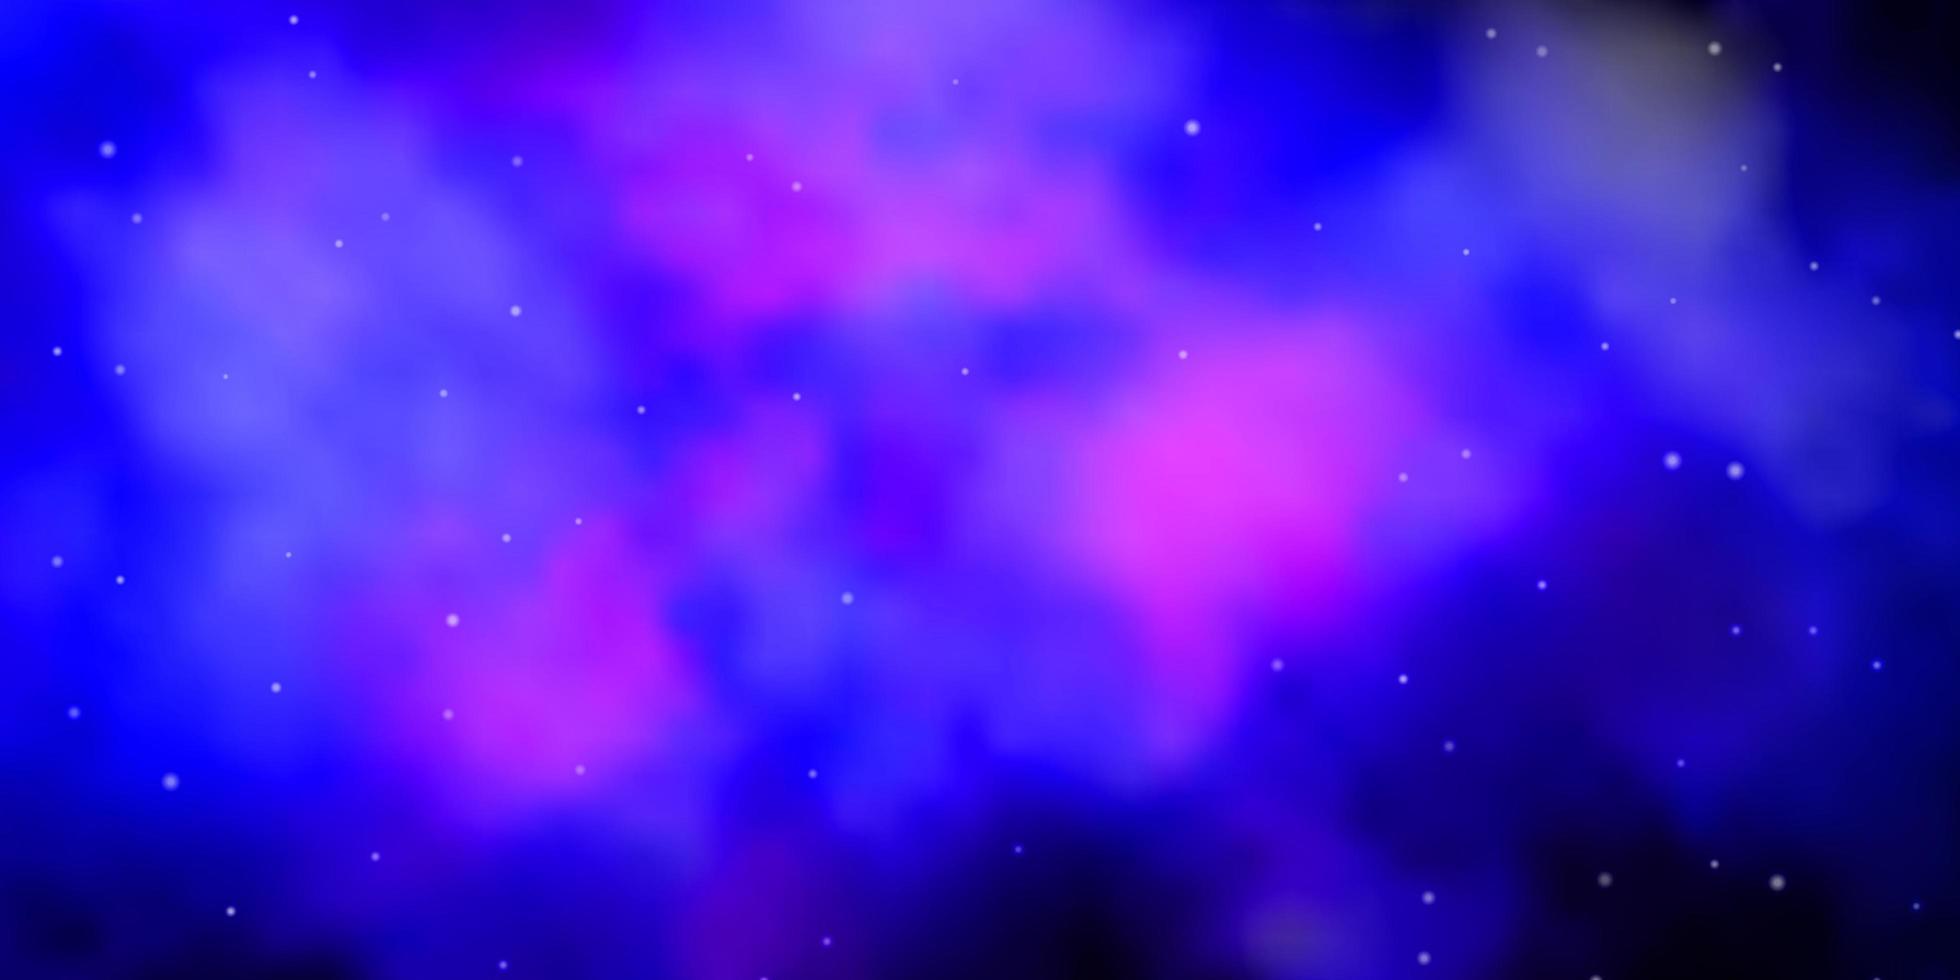 padrão de vetor rosa escuro, azul com estrelas abstratas.